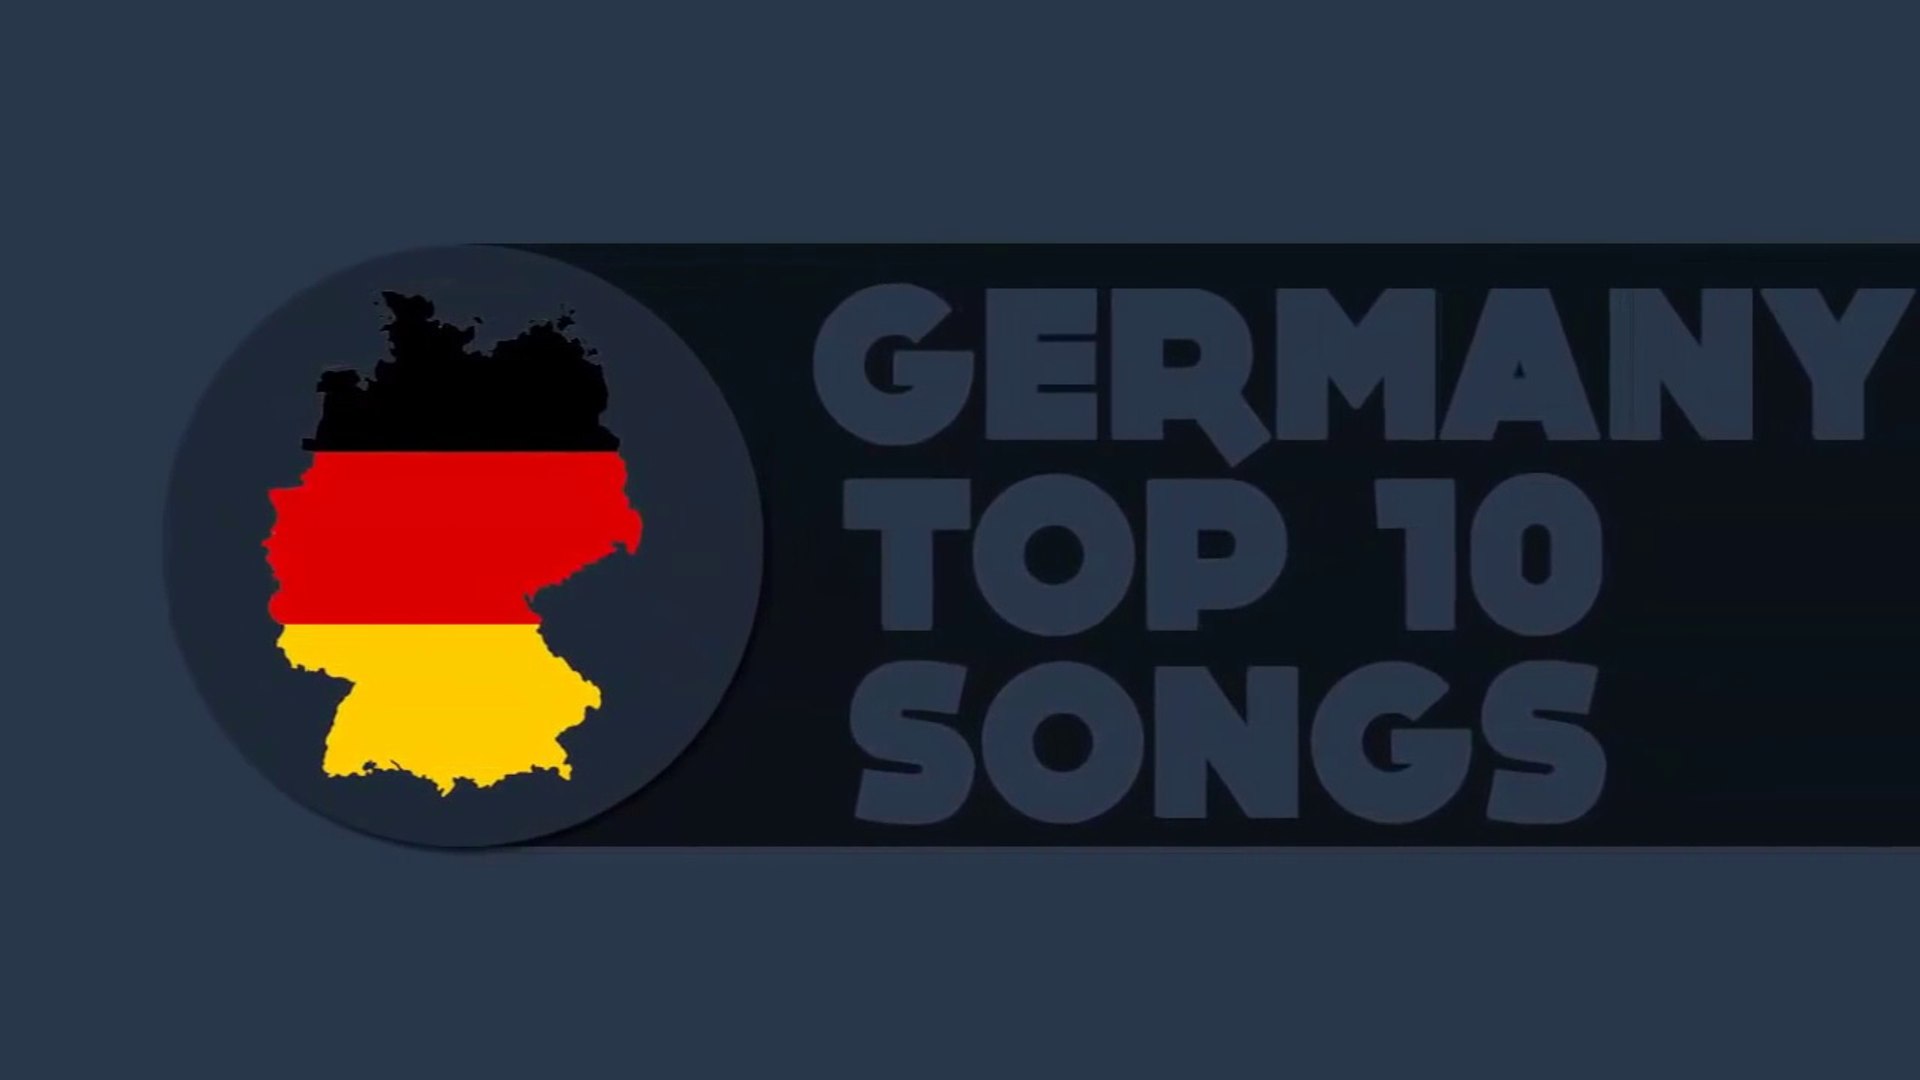 Germany Top songs